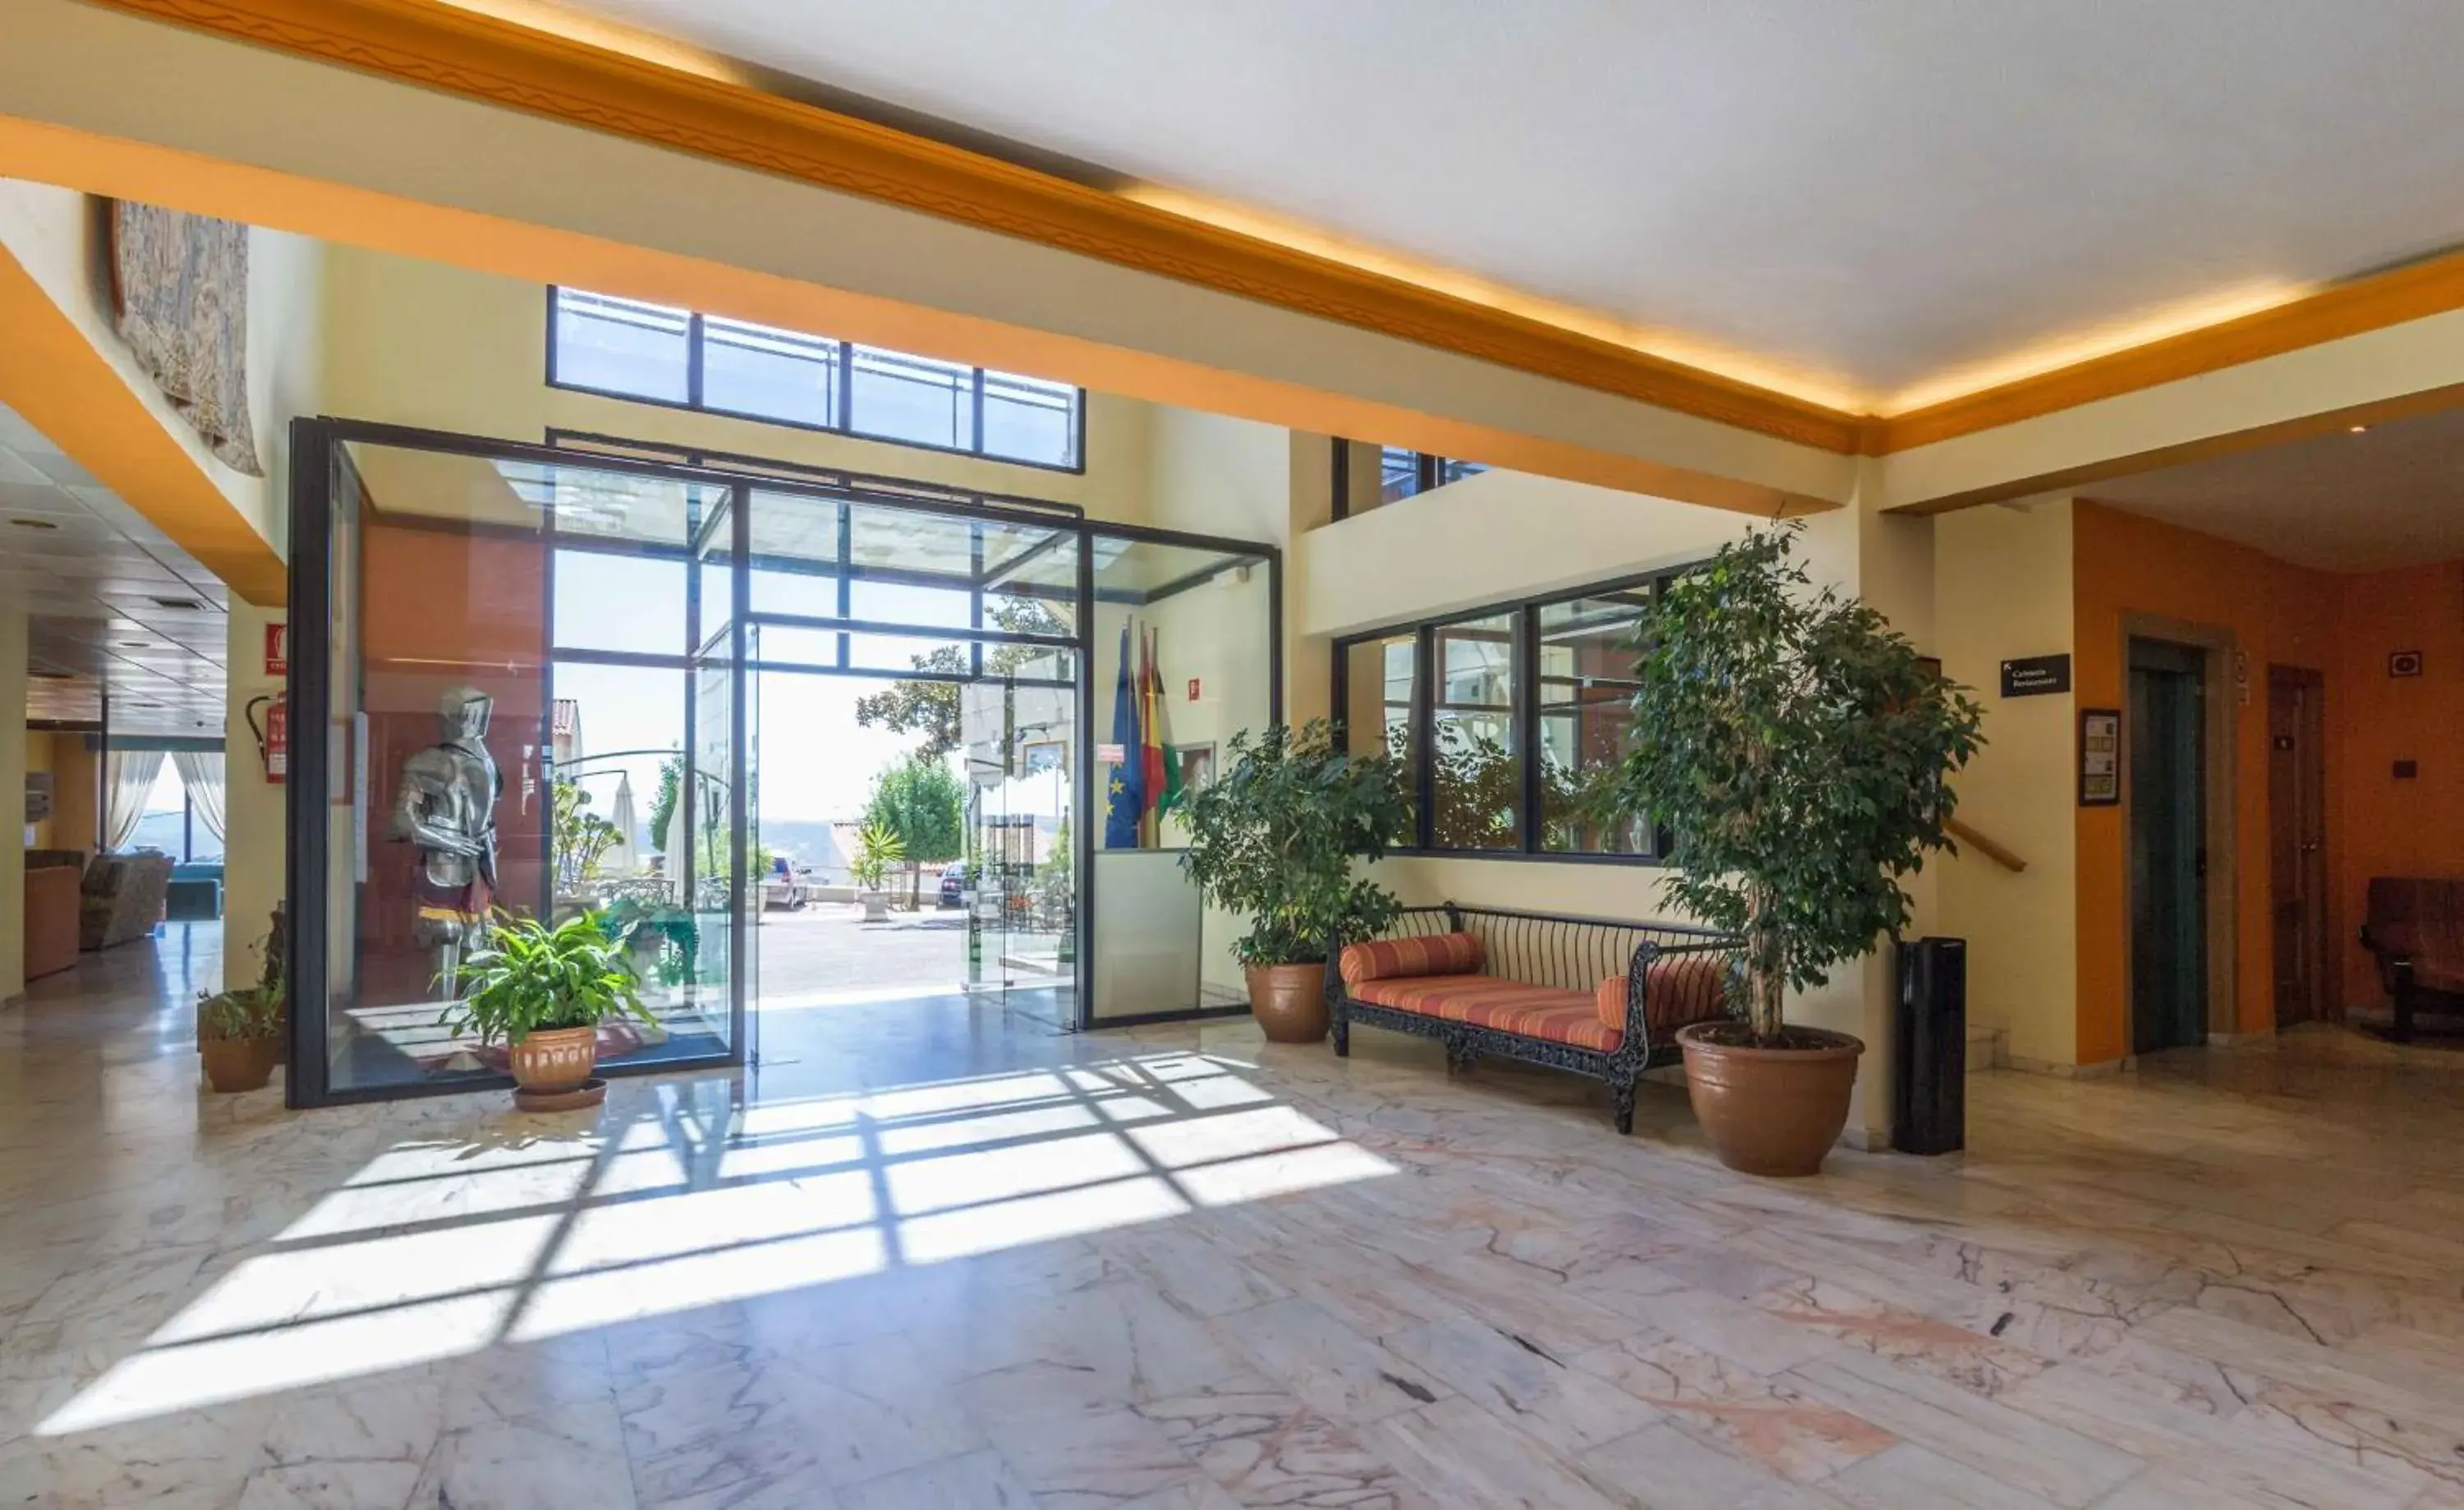 Lobby or reception, Lobby/Reception in Hotel Los Templarios